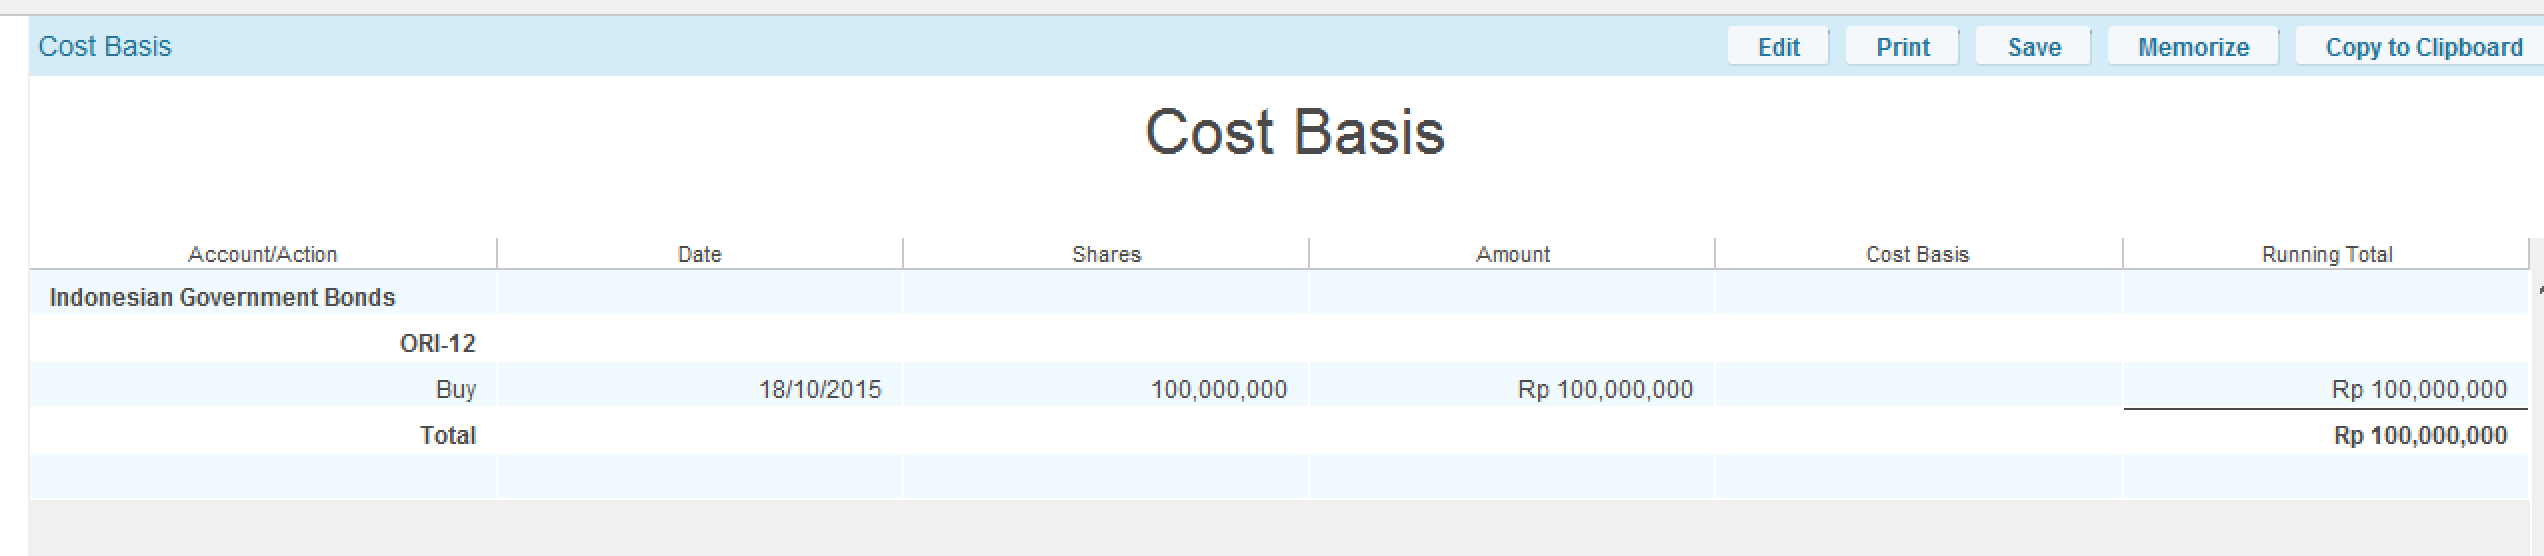 Cost_basis